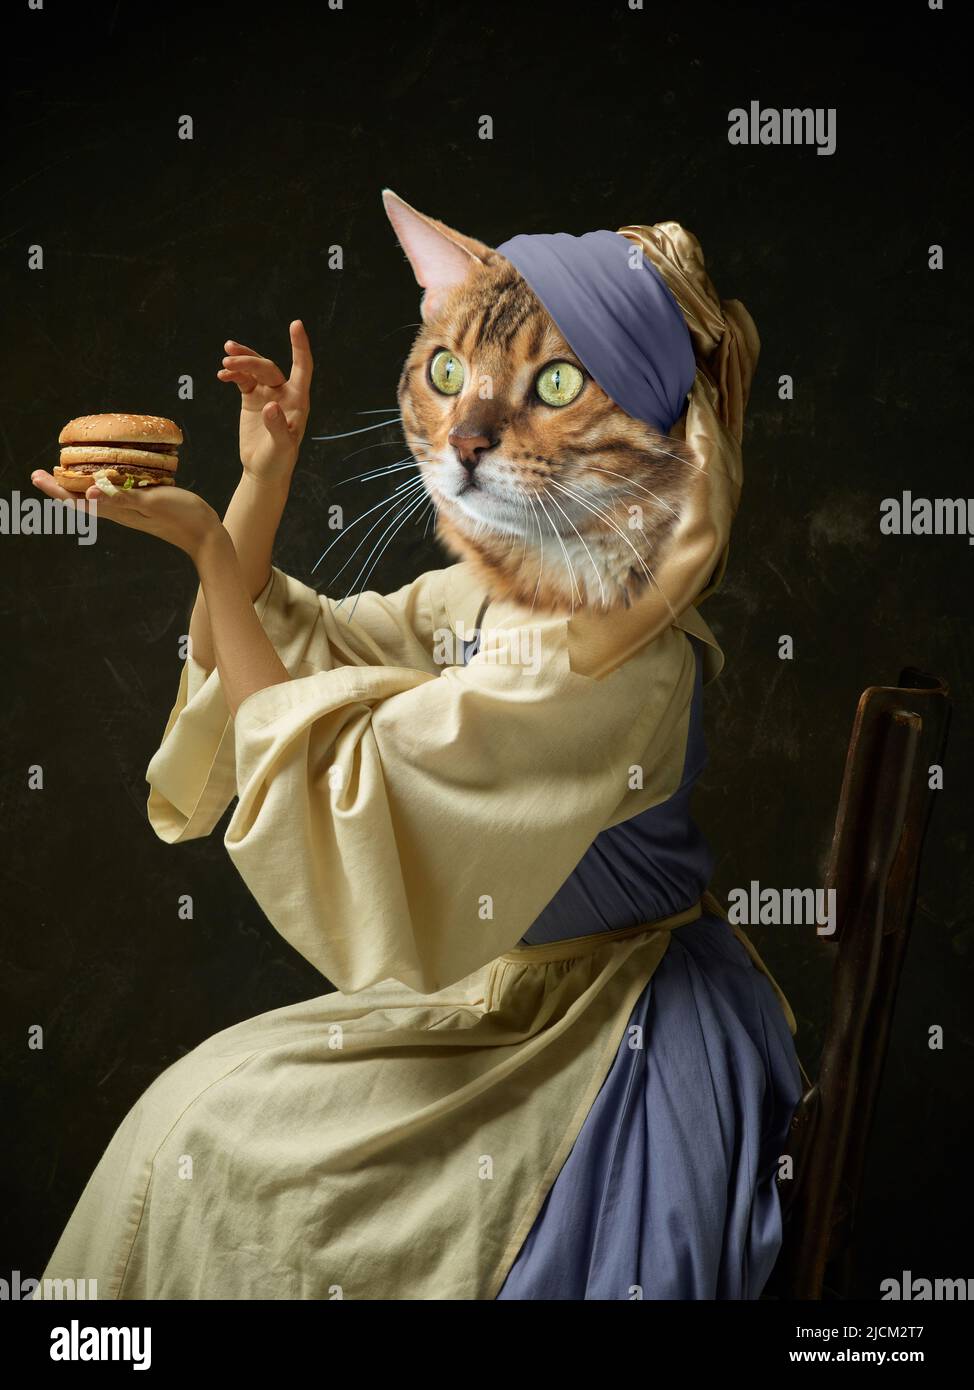 Modèle féminin gracieux comme la personne médiévale en vêtements vintage dirigé par la tête de chat isolée sur fond rétro foncé. Comparaison d'époques, œuvres d'art Banque D'Images